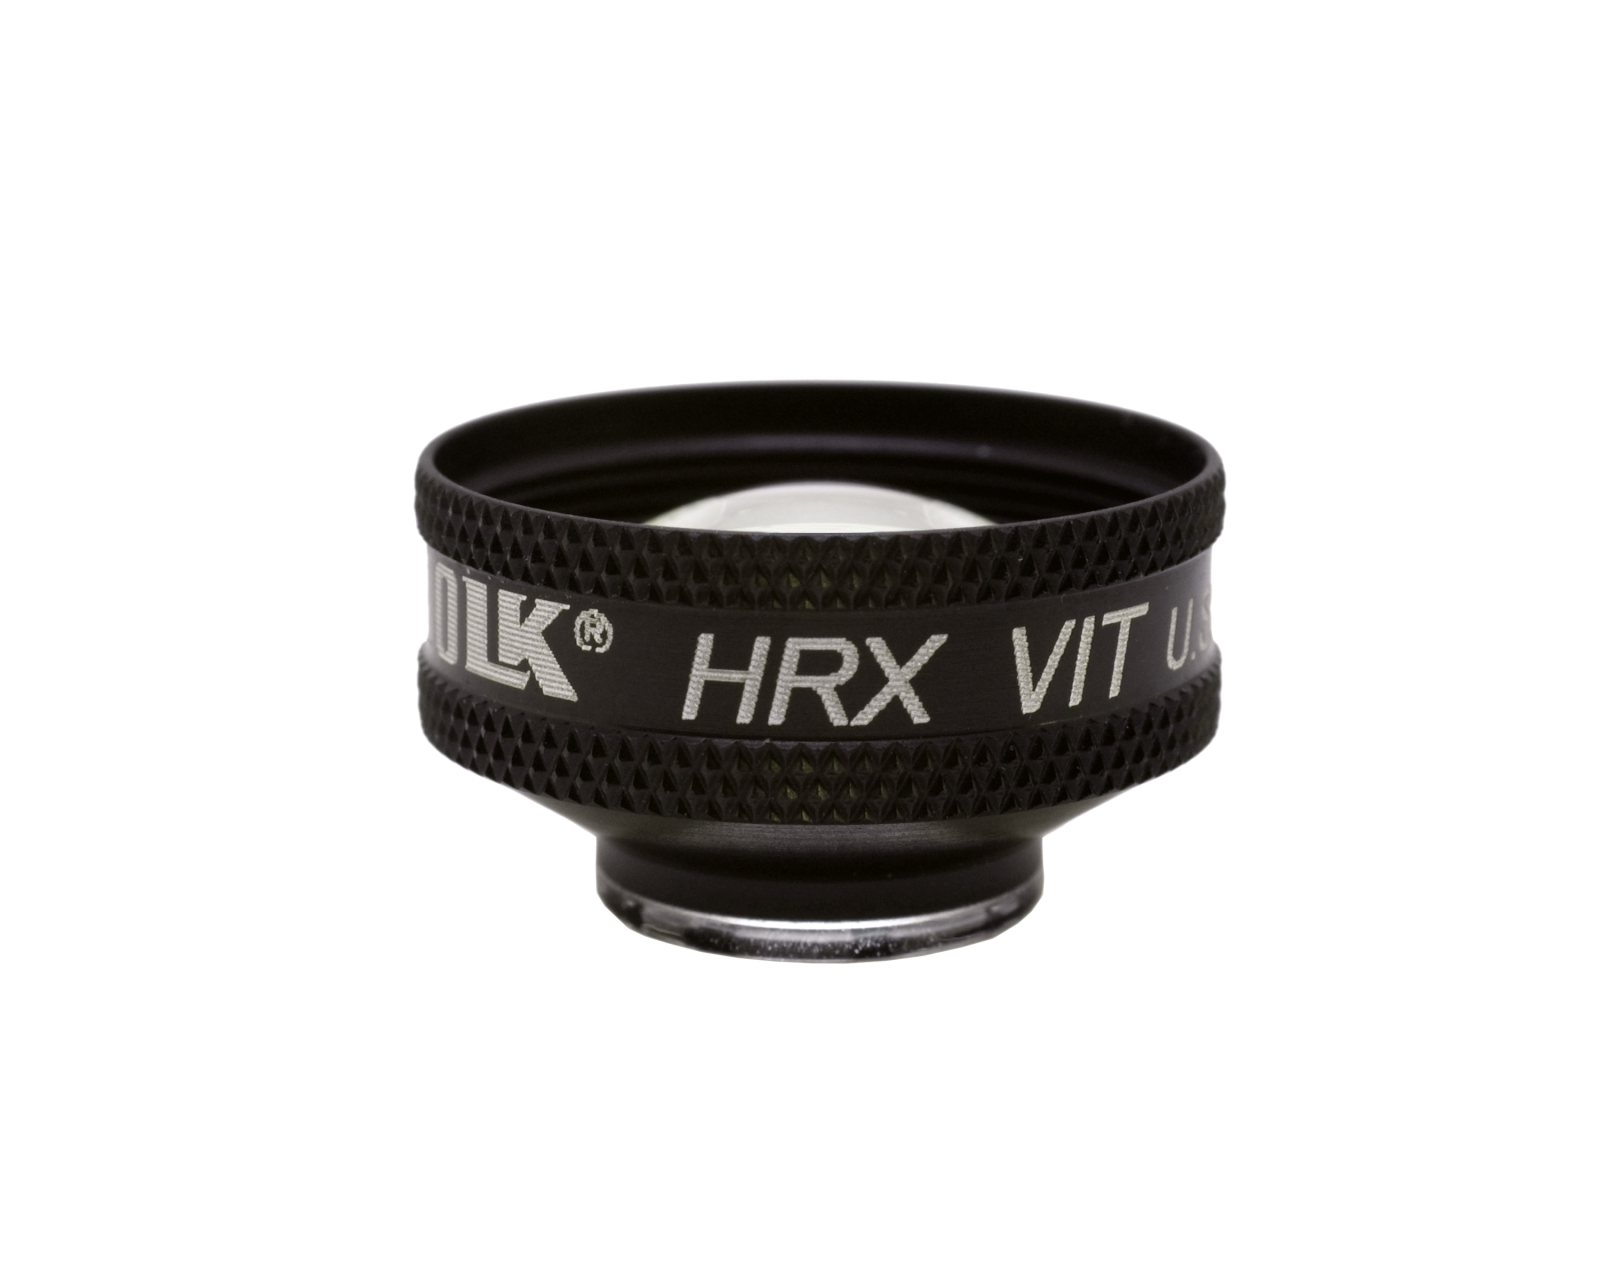 HRX Vit Lens